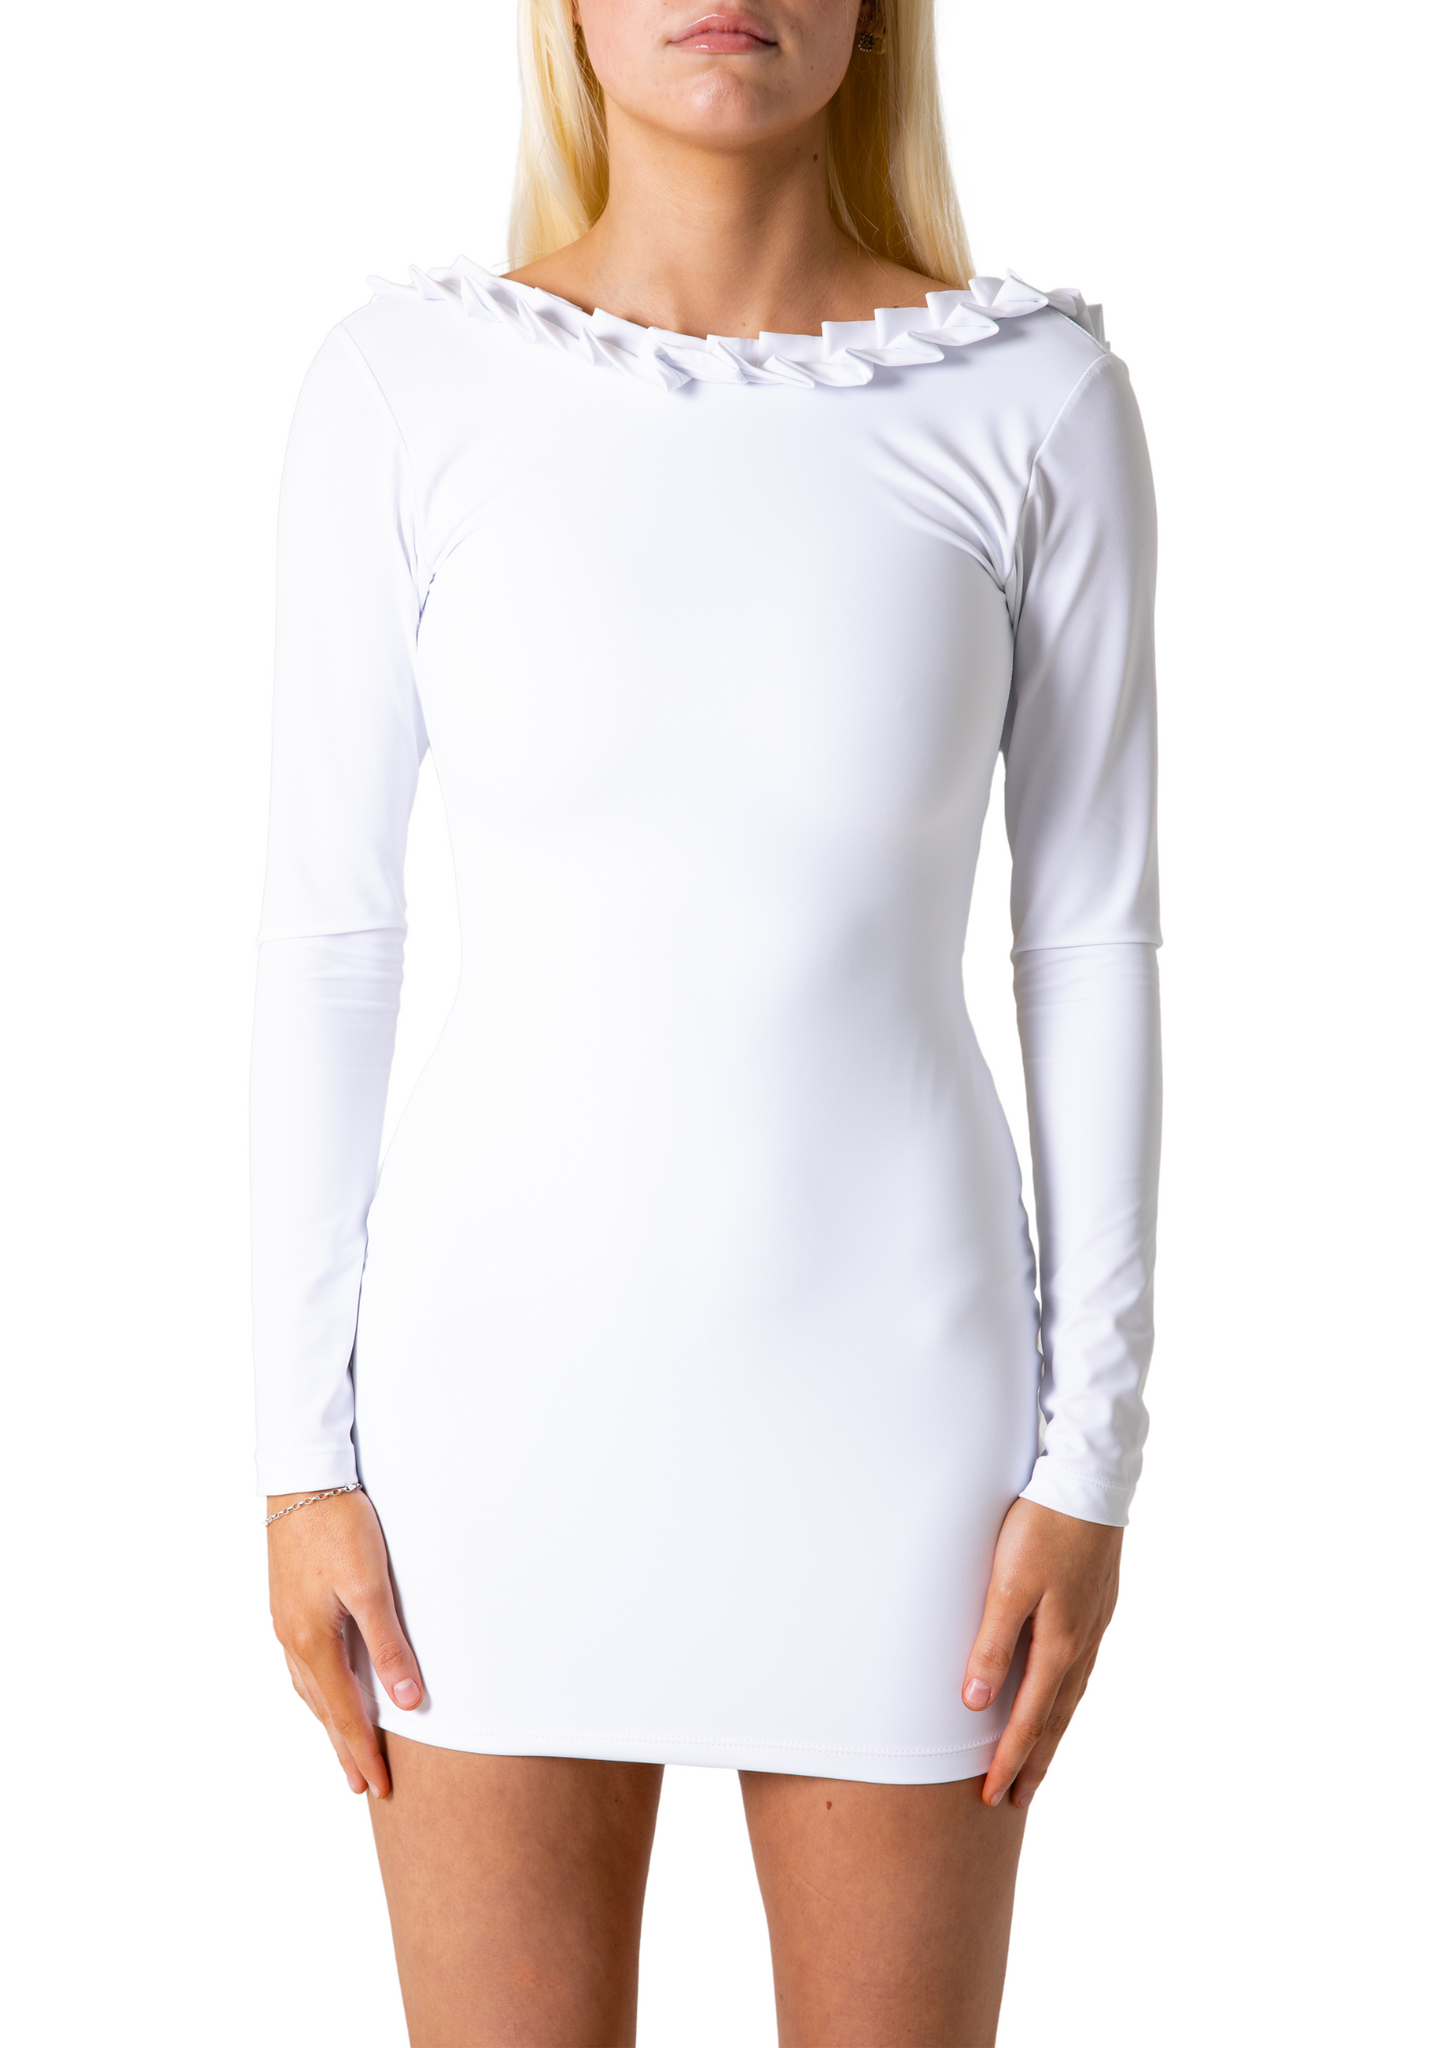 SYDNEY DRESS - WHITE